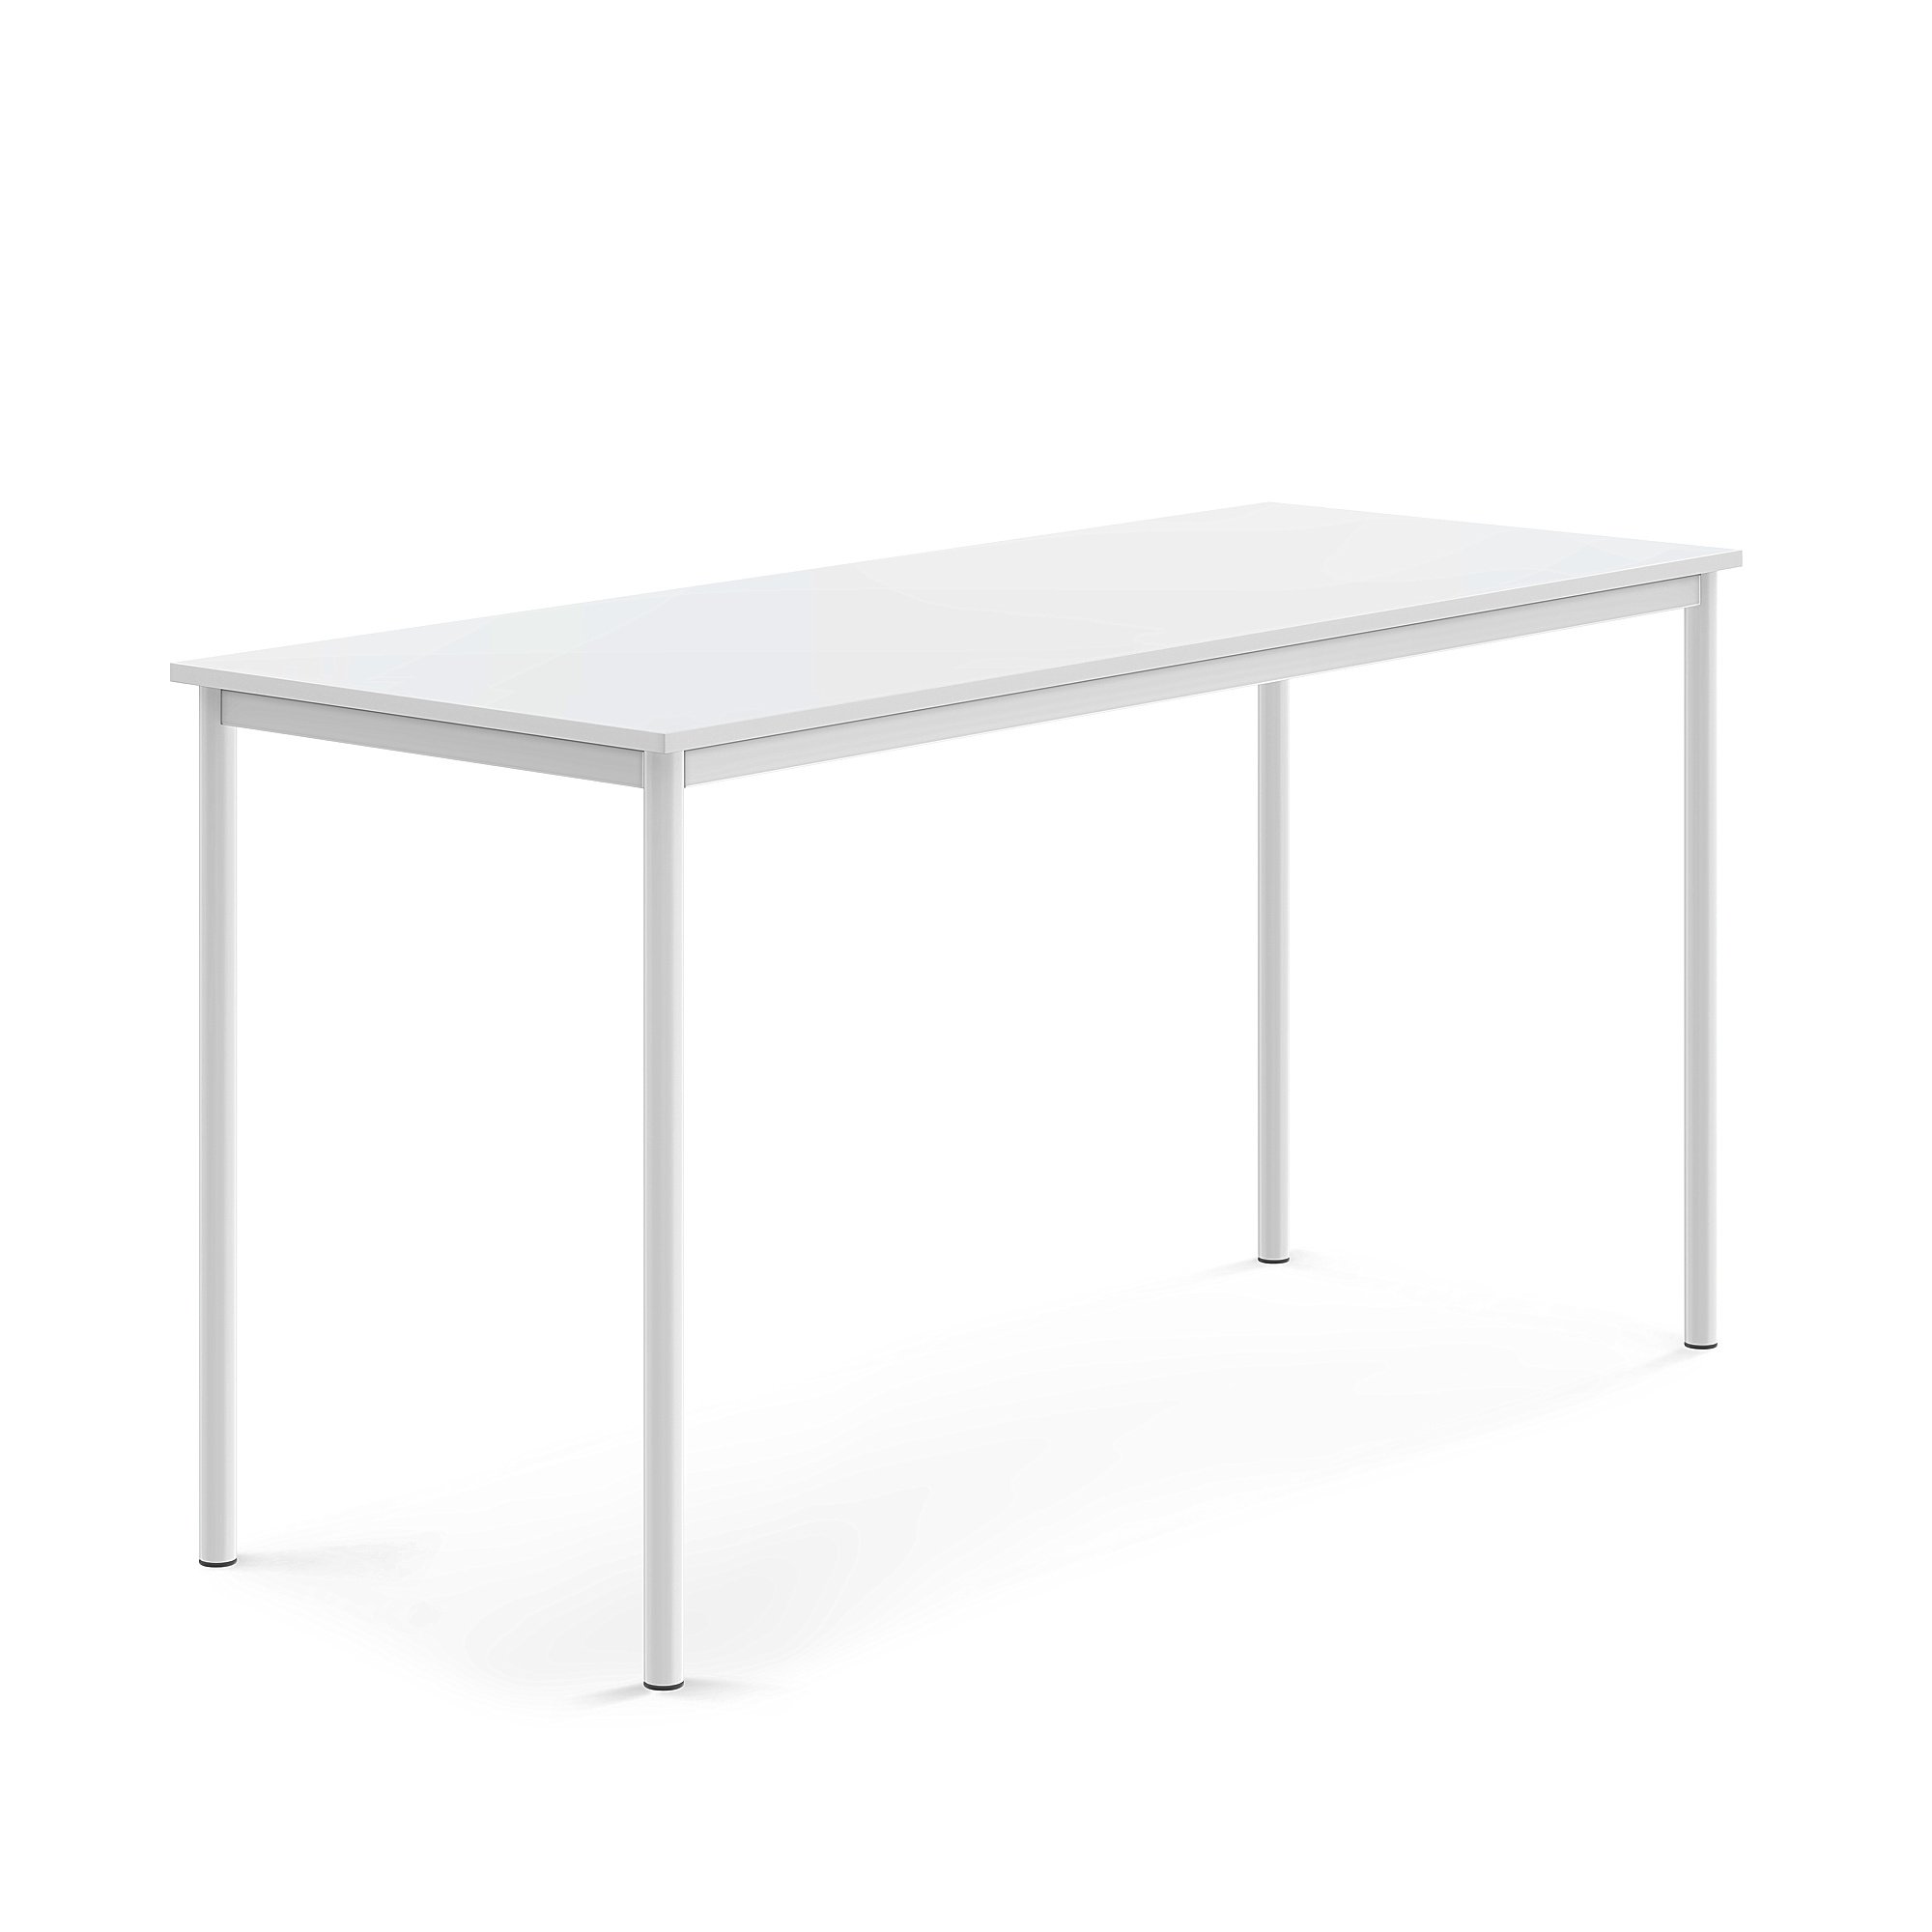 Stůl BORÅS, 1800x700x900 mm, bílé nohy, HPL deska, bílá